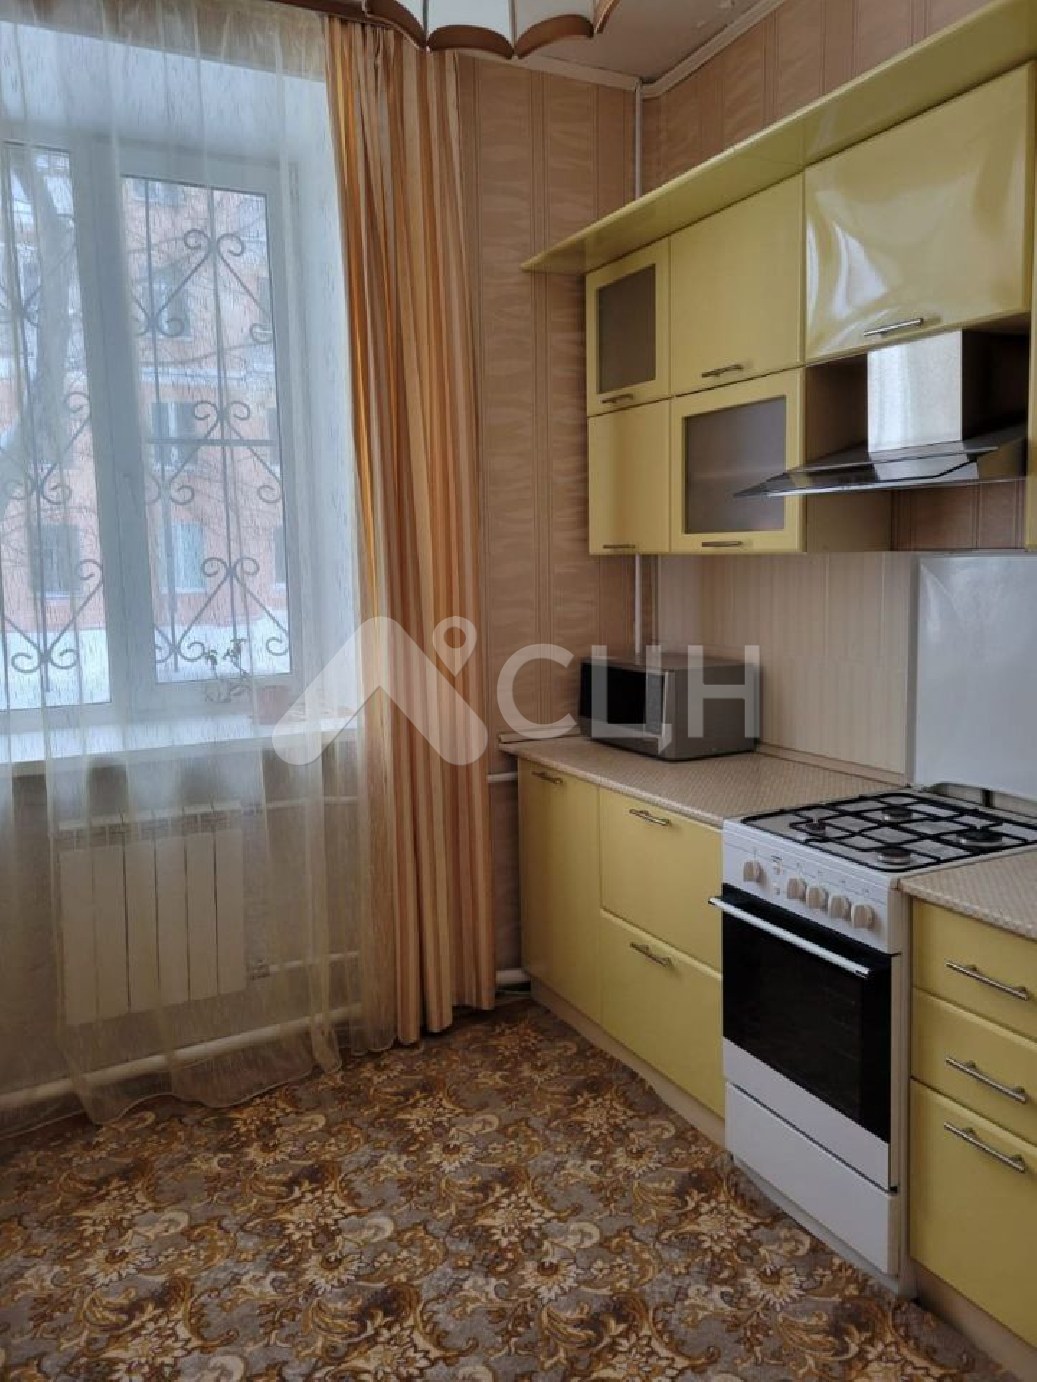 купить квартиру в сарове
: Г. Саров, проспект Ленина, 8, 3-комн квартира, этаж 1 из 4, продажа.